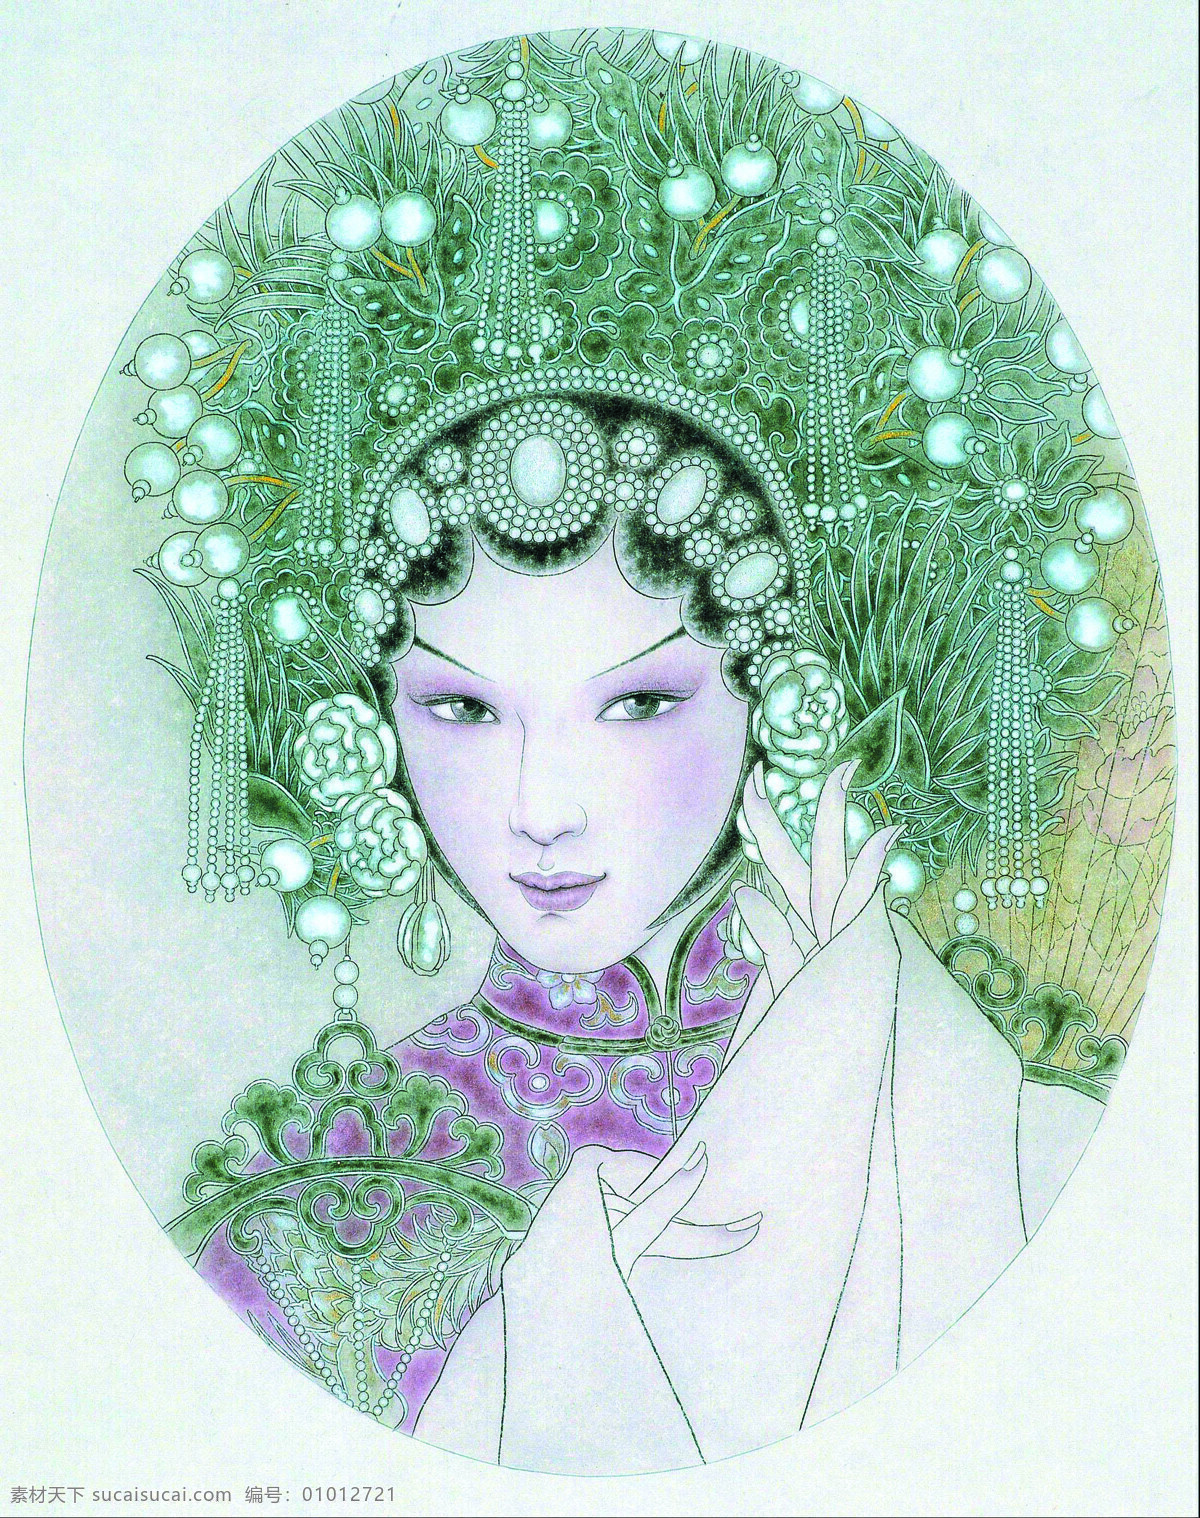 付洛红人物画 美术 中国画 工笔画 人物画 女人 戏曲人物 贵妃 文化艺术 绘画书法